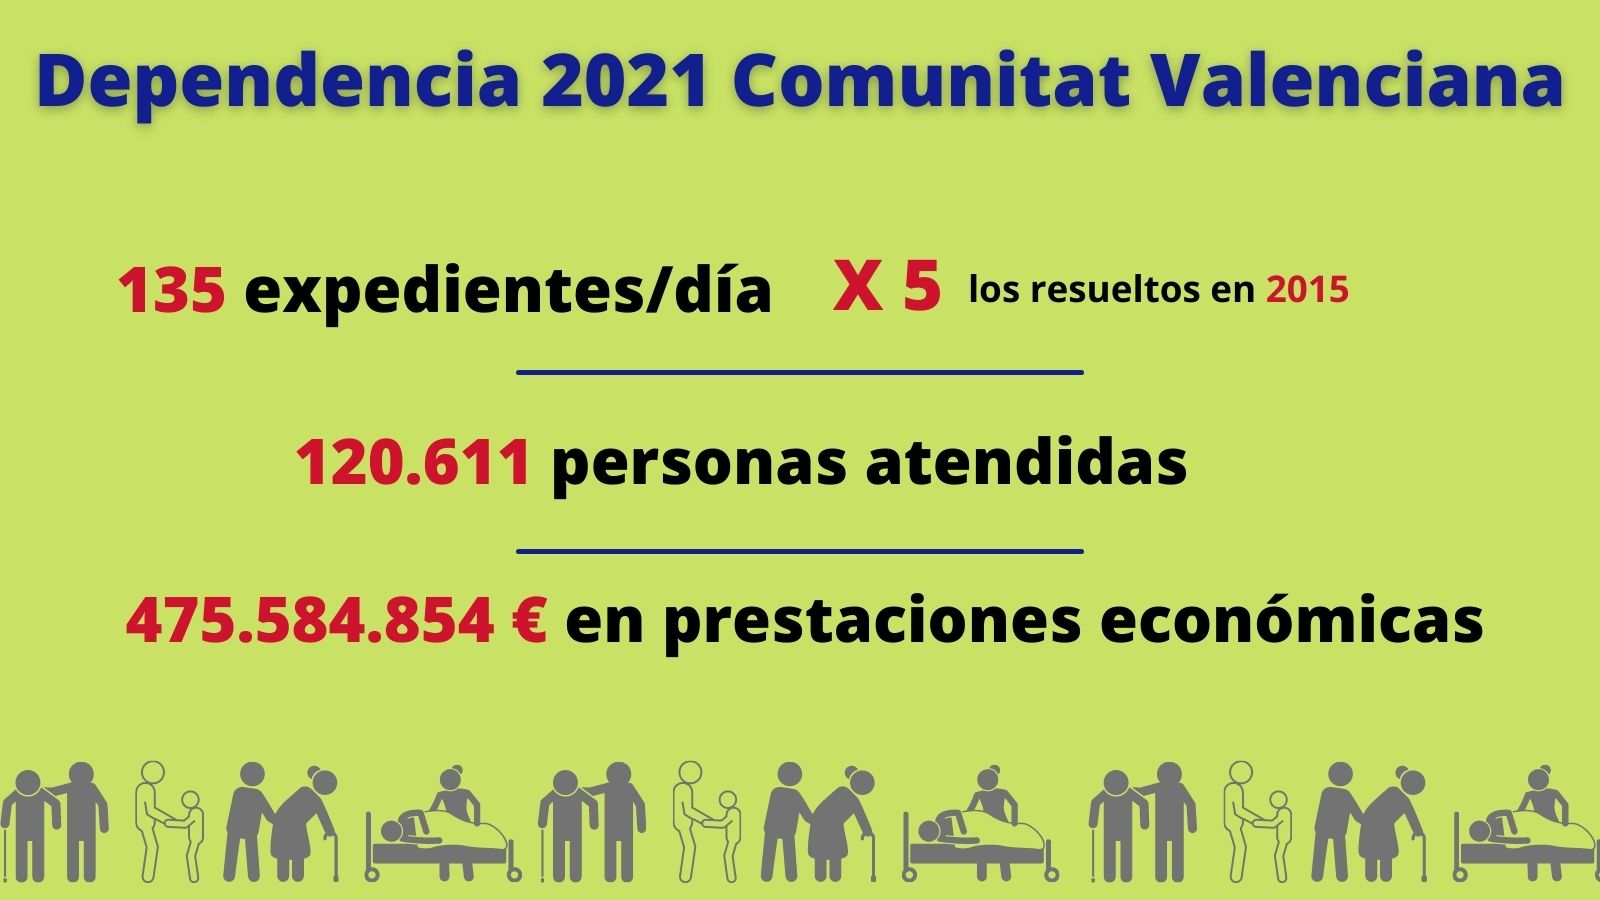 El servicio valenciano de atención a la dependencia resolvió en 2021 el mayor número de expedientes desde que la Ley entró en vigor